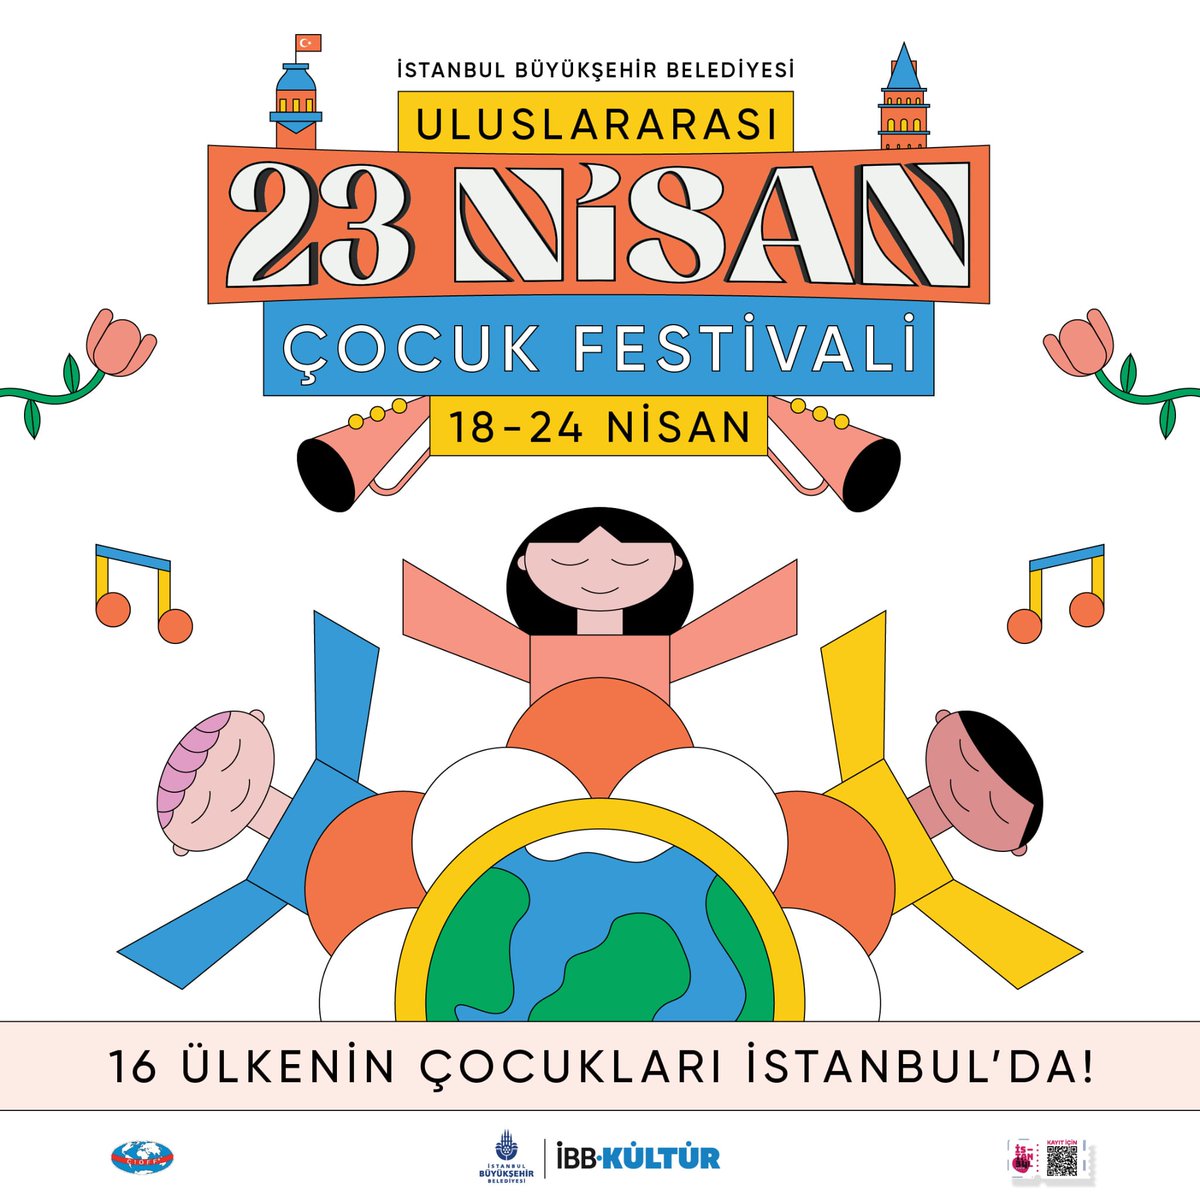 16 ülkenin çocukları 23 Nisan’da İstanbul’da. 18-24 Nisan tarihleri arasında bu yıl ilk kez gerçekleştirilecek Uluslararası 23 Nisan Çocuk Festivali, dünya genelinde 16 ülkeden çocuk halk dansları topluluğunu İstanbul’da ağırlayacak. Festival programı ve detaylı bilgi için;…